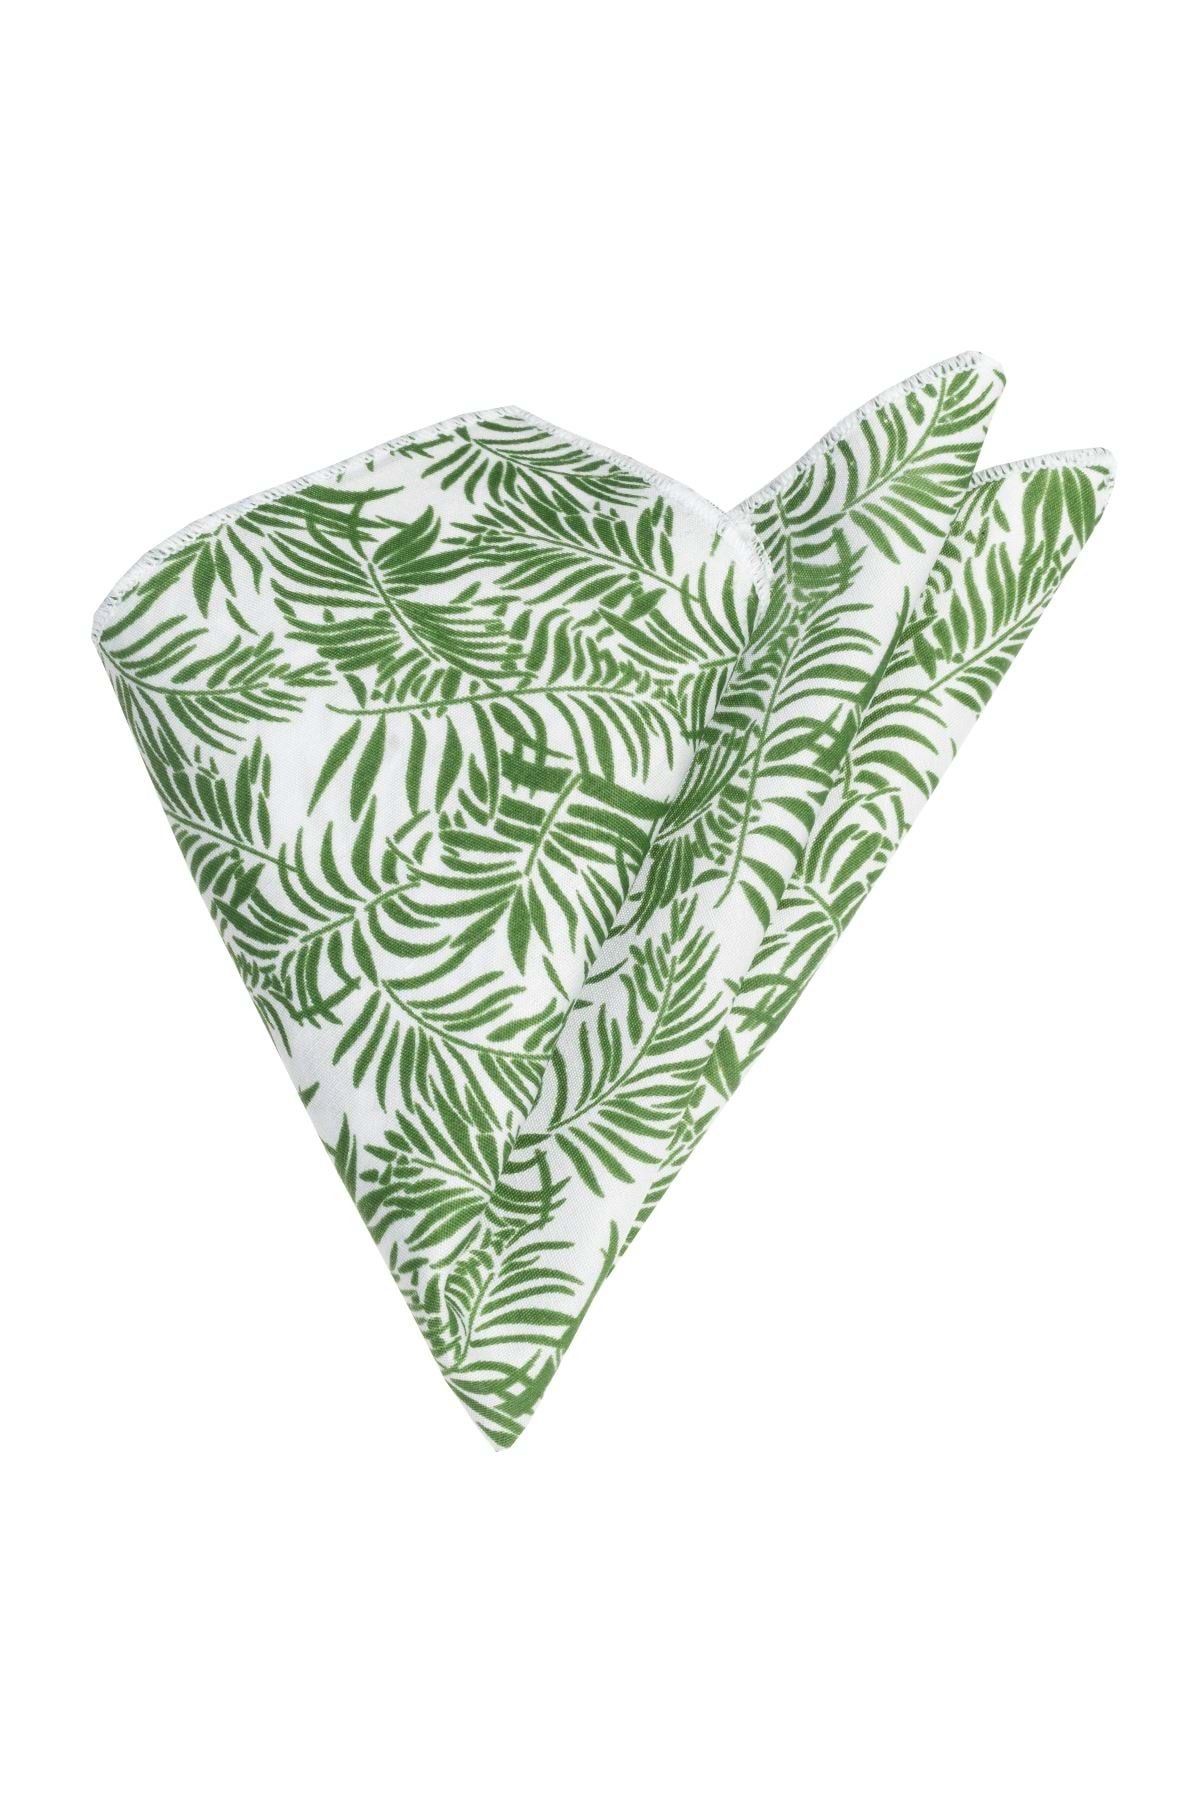 Exve Exclusive Yeşil Beyaz Hawaii Desen Baskılı Cep Yaka Mendili